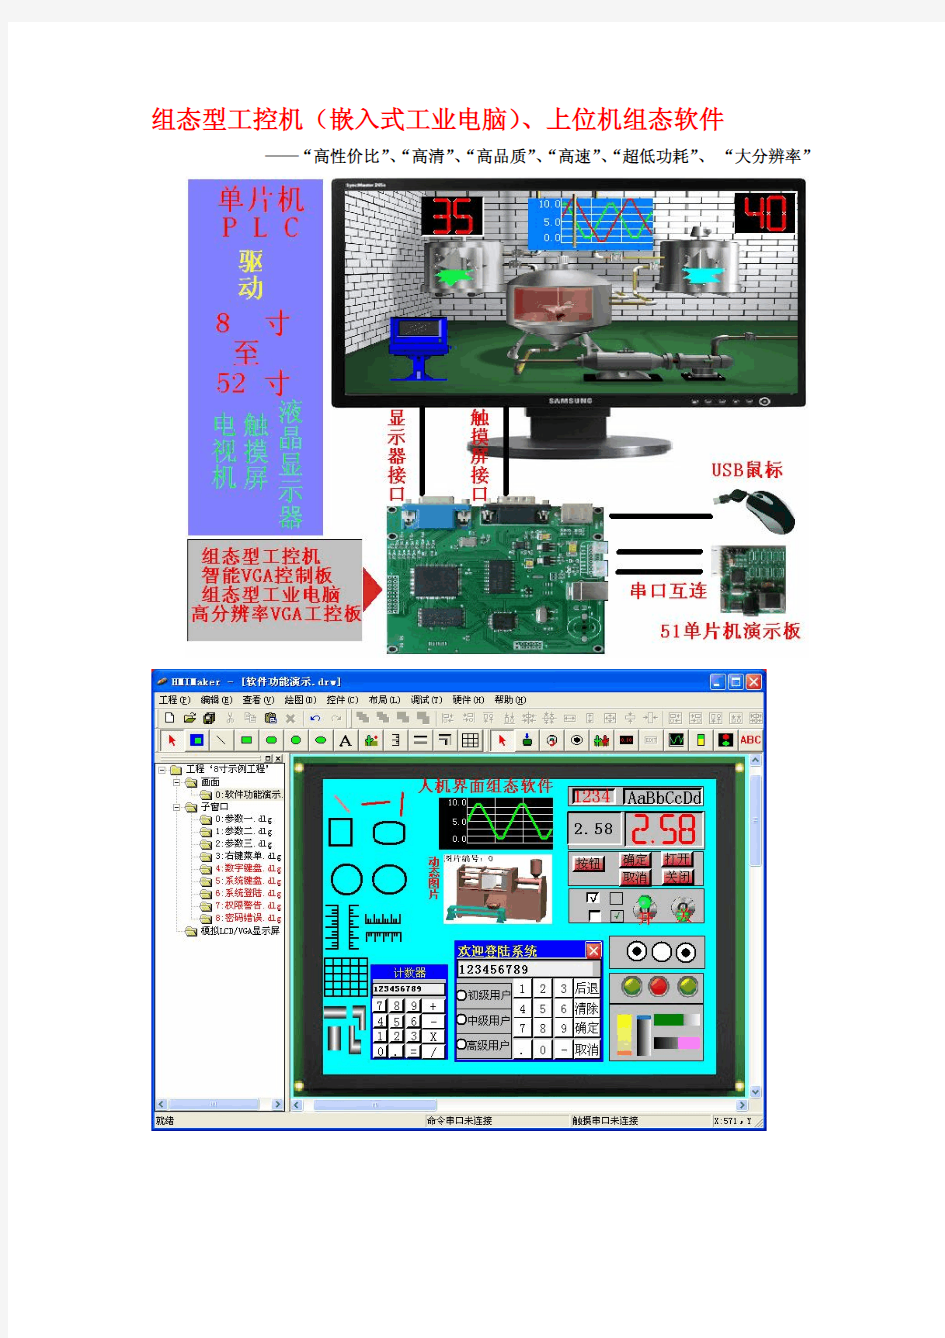 组态型工控机(工业电脑)、上位机组态软件